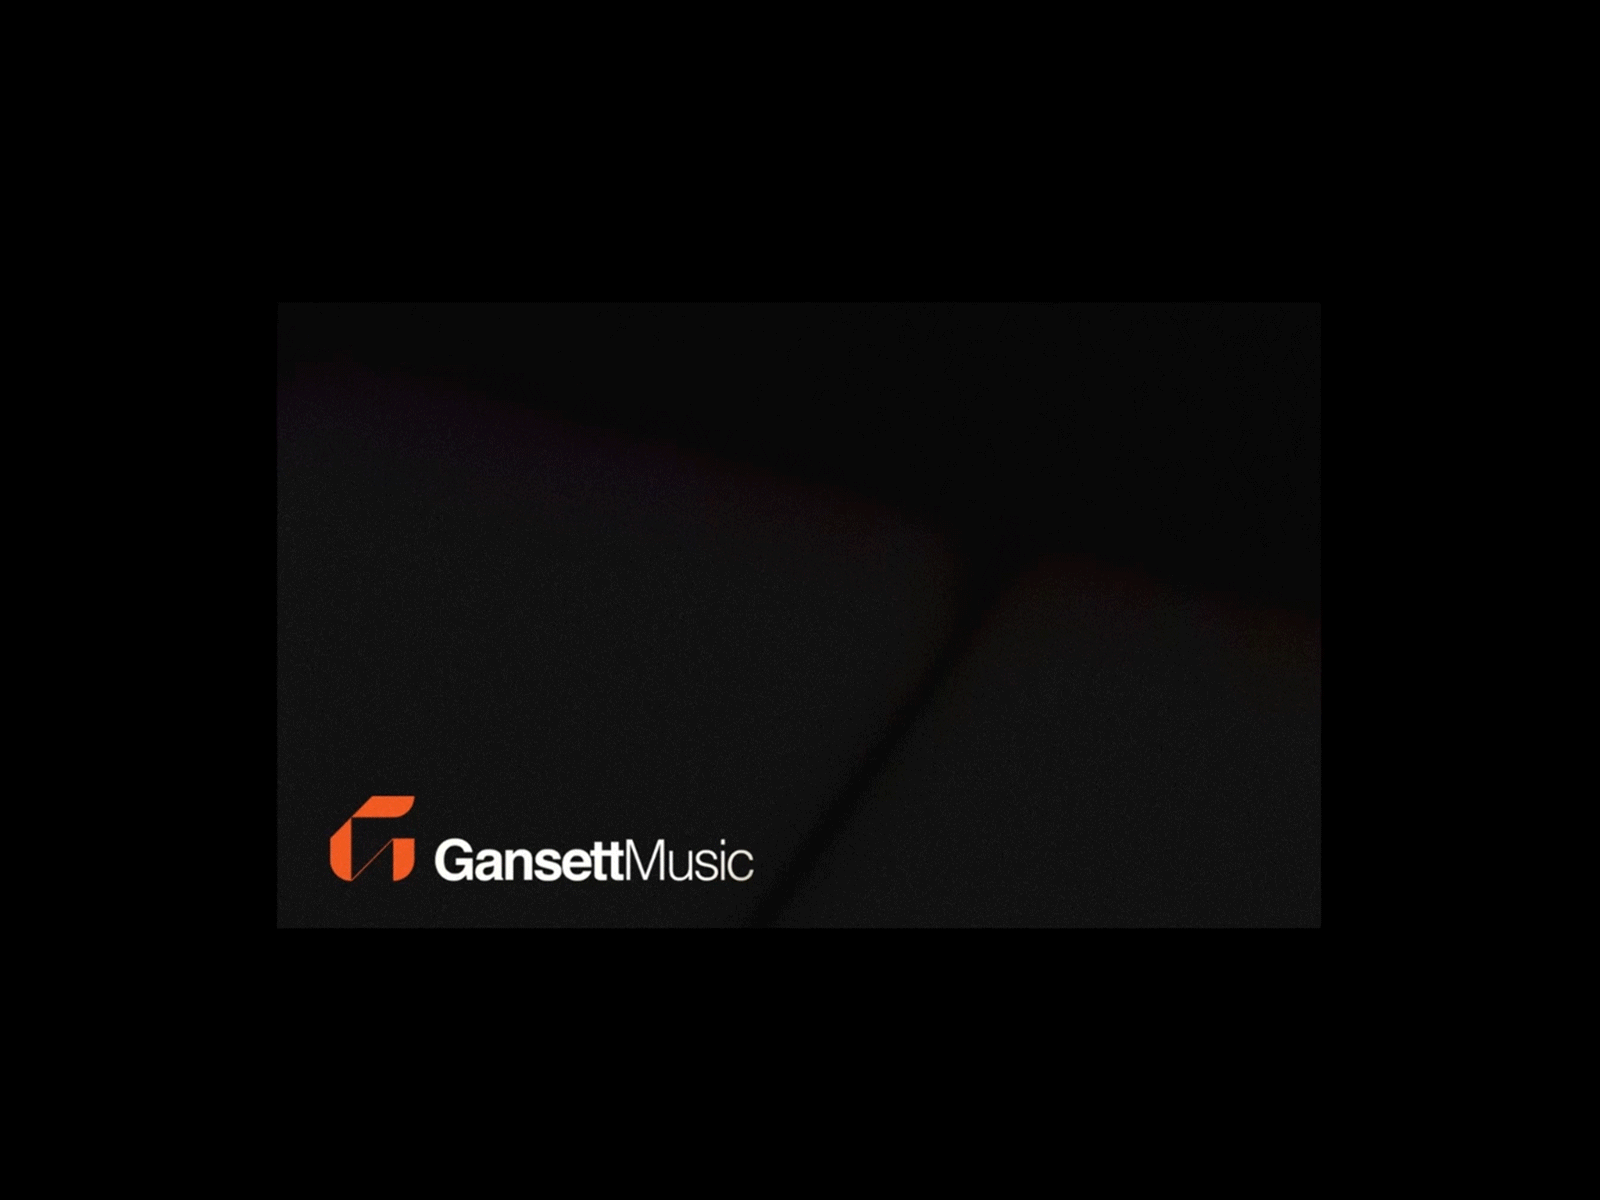 Gunsett Music Business Card